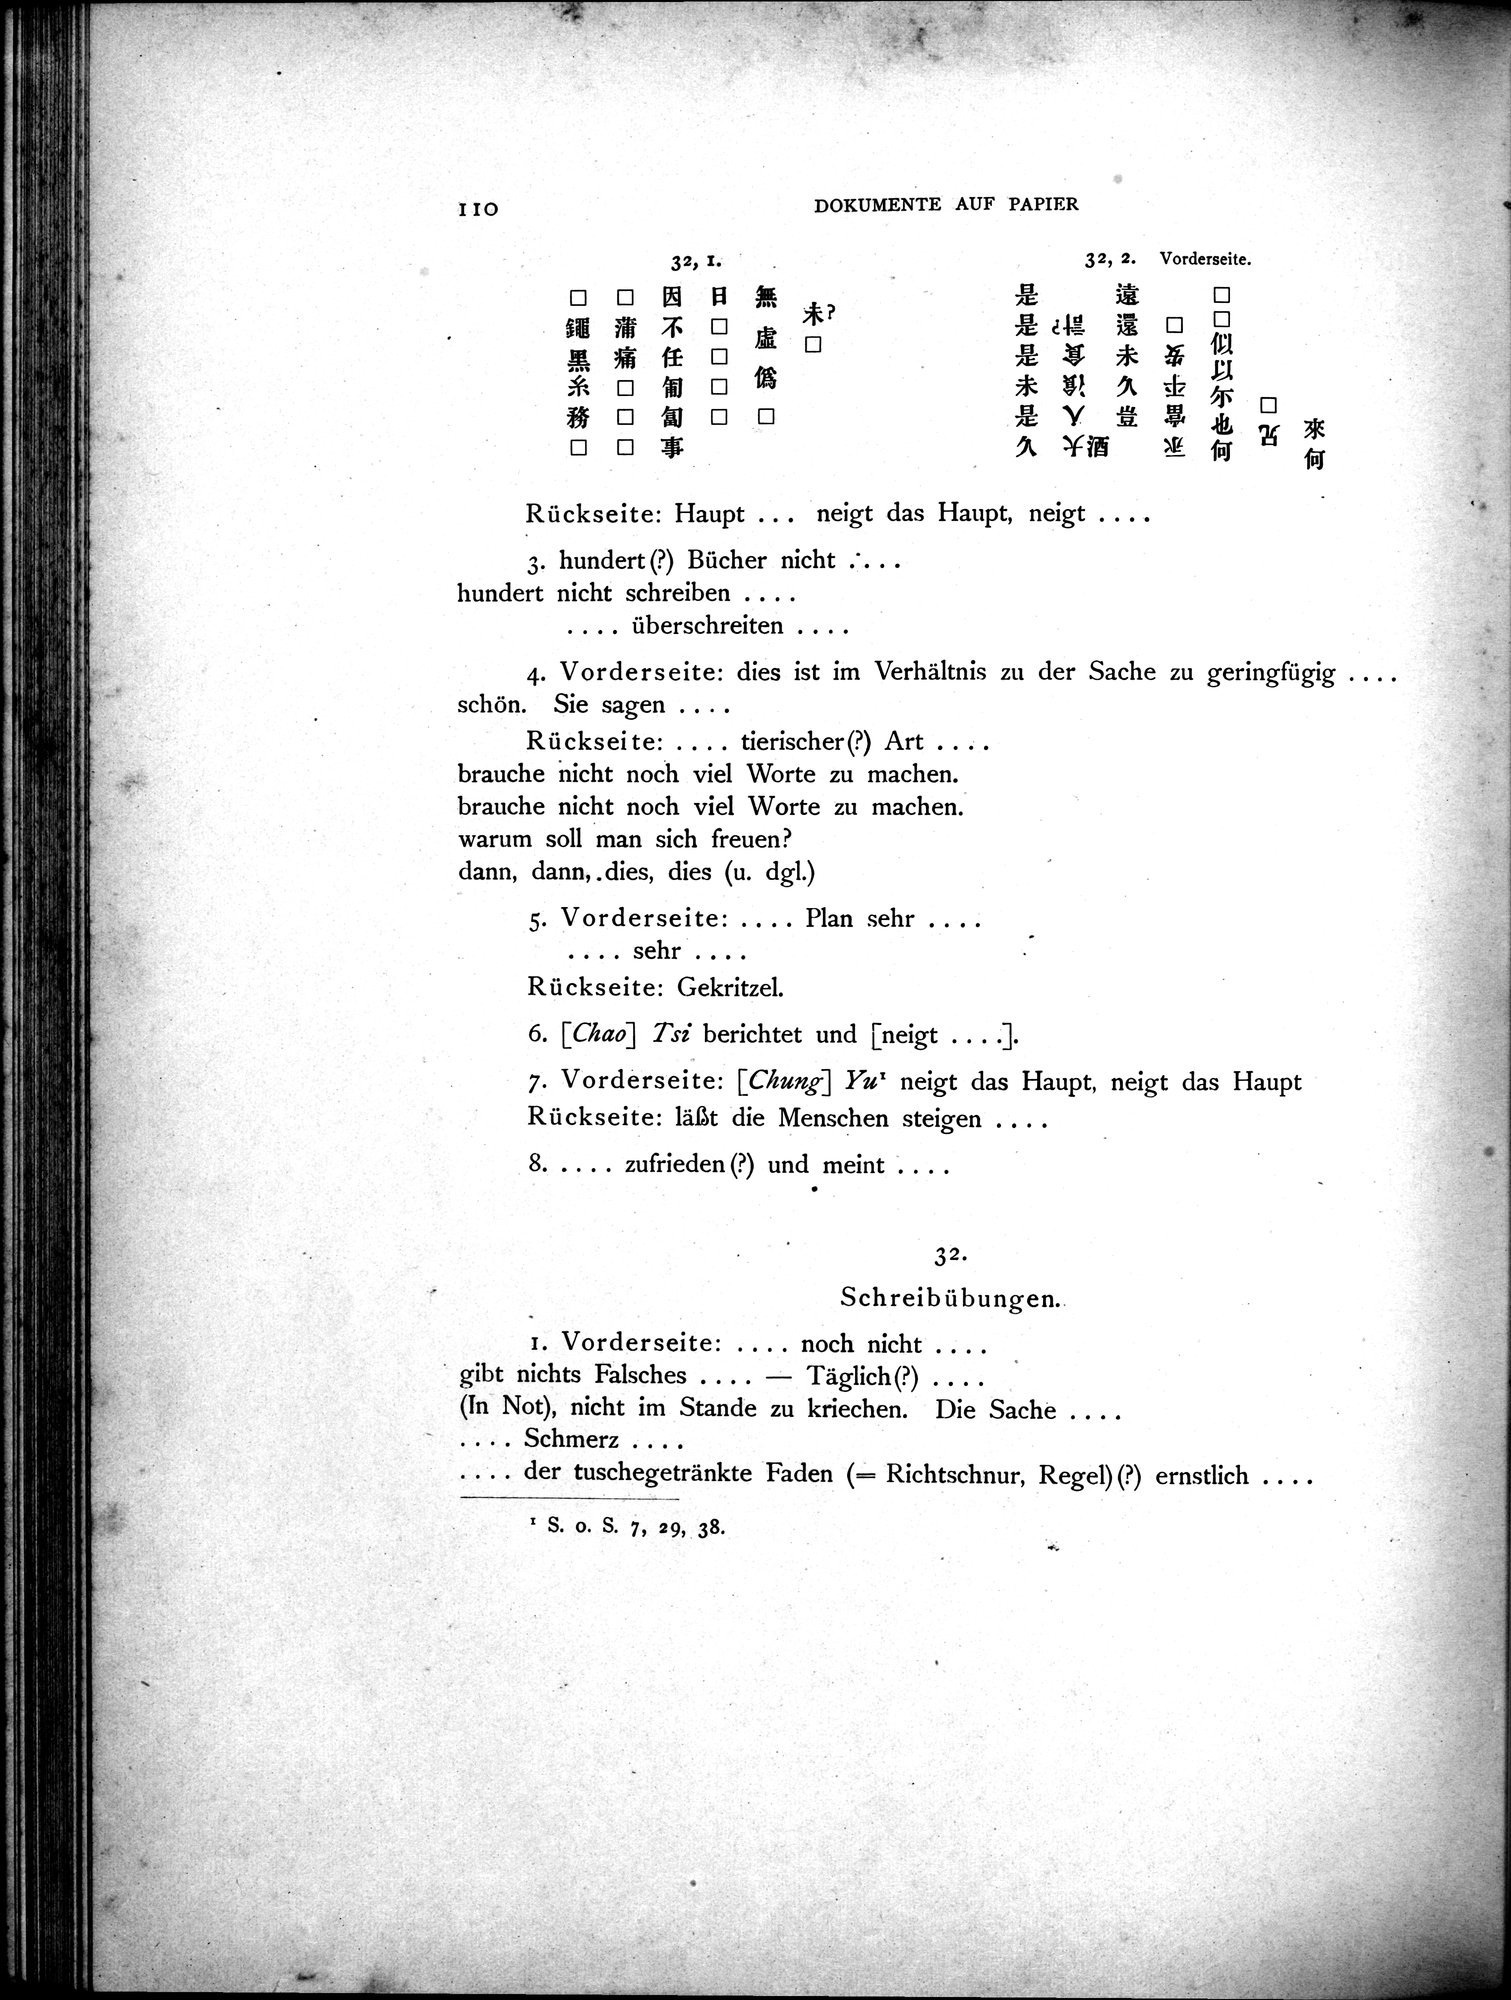 Die Chinesischen Handschriften- und sonstigen Kleinfunde Sven Hedins in Lou-lan : vol.1 / Page 134 (Grayscale High Resolution Image)